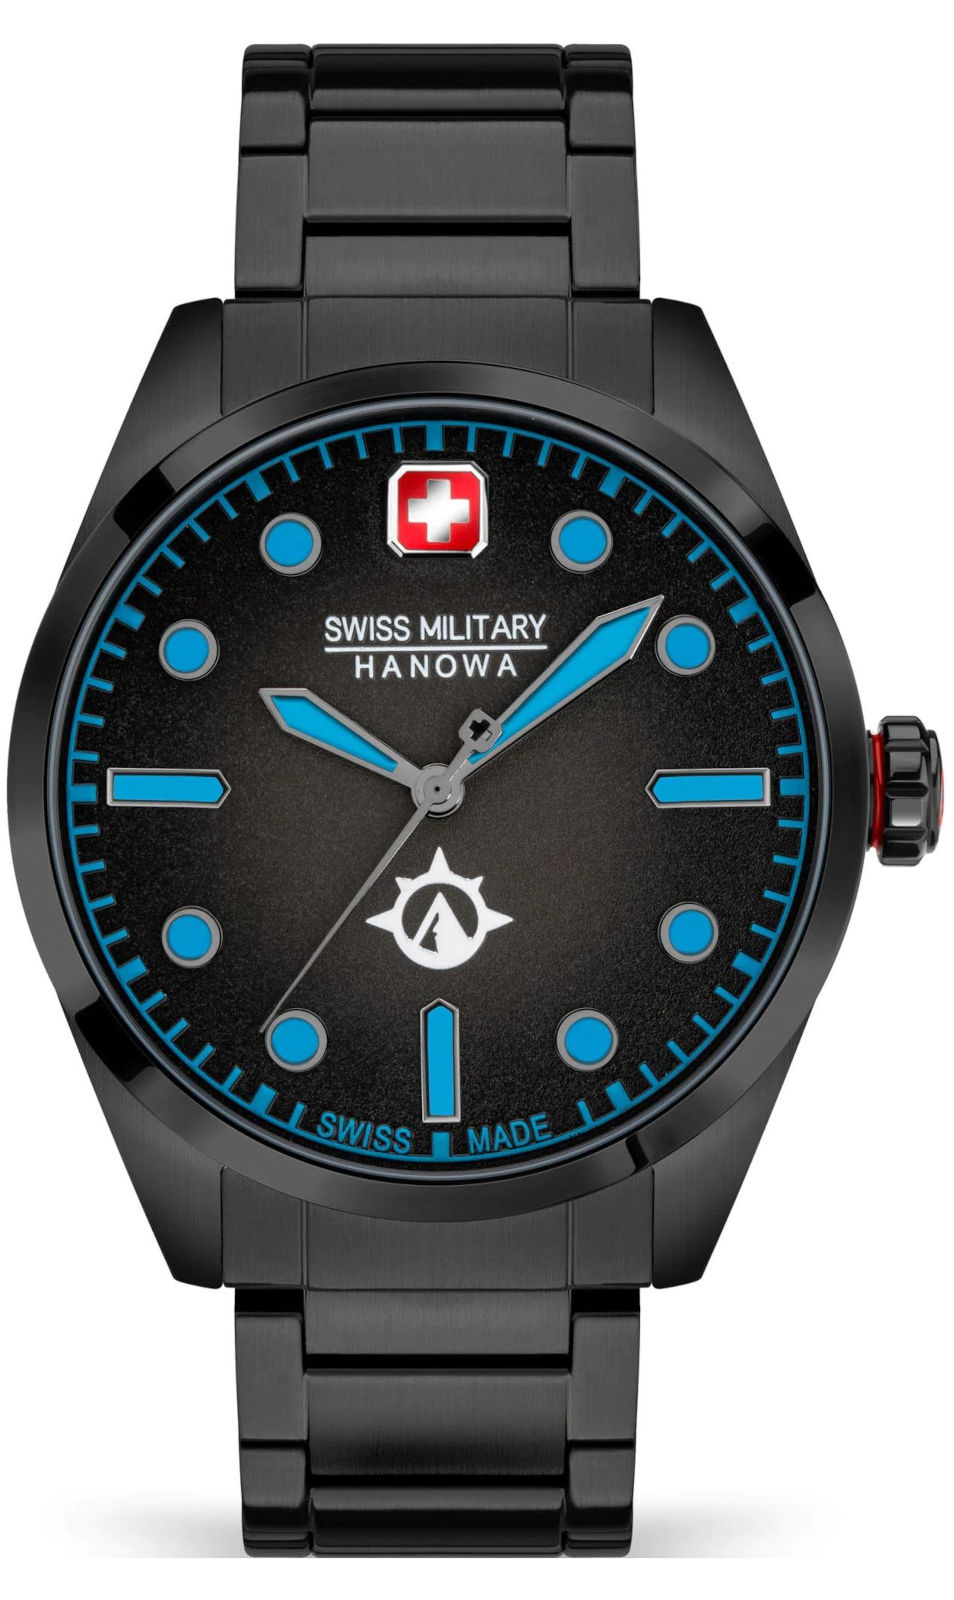  Swiss Military Hanowa SMWGG2100530